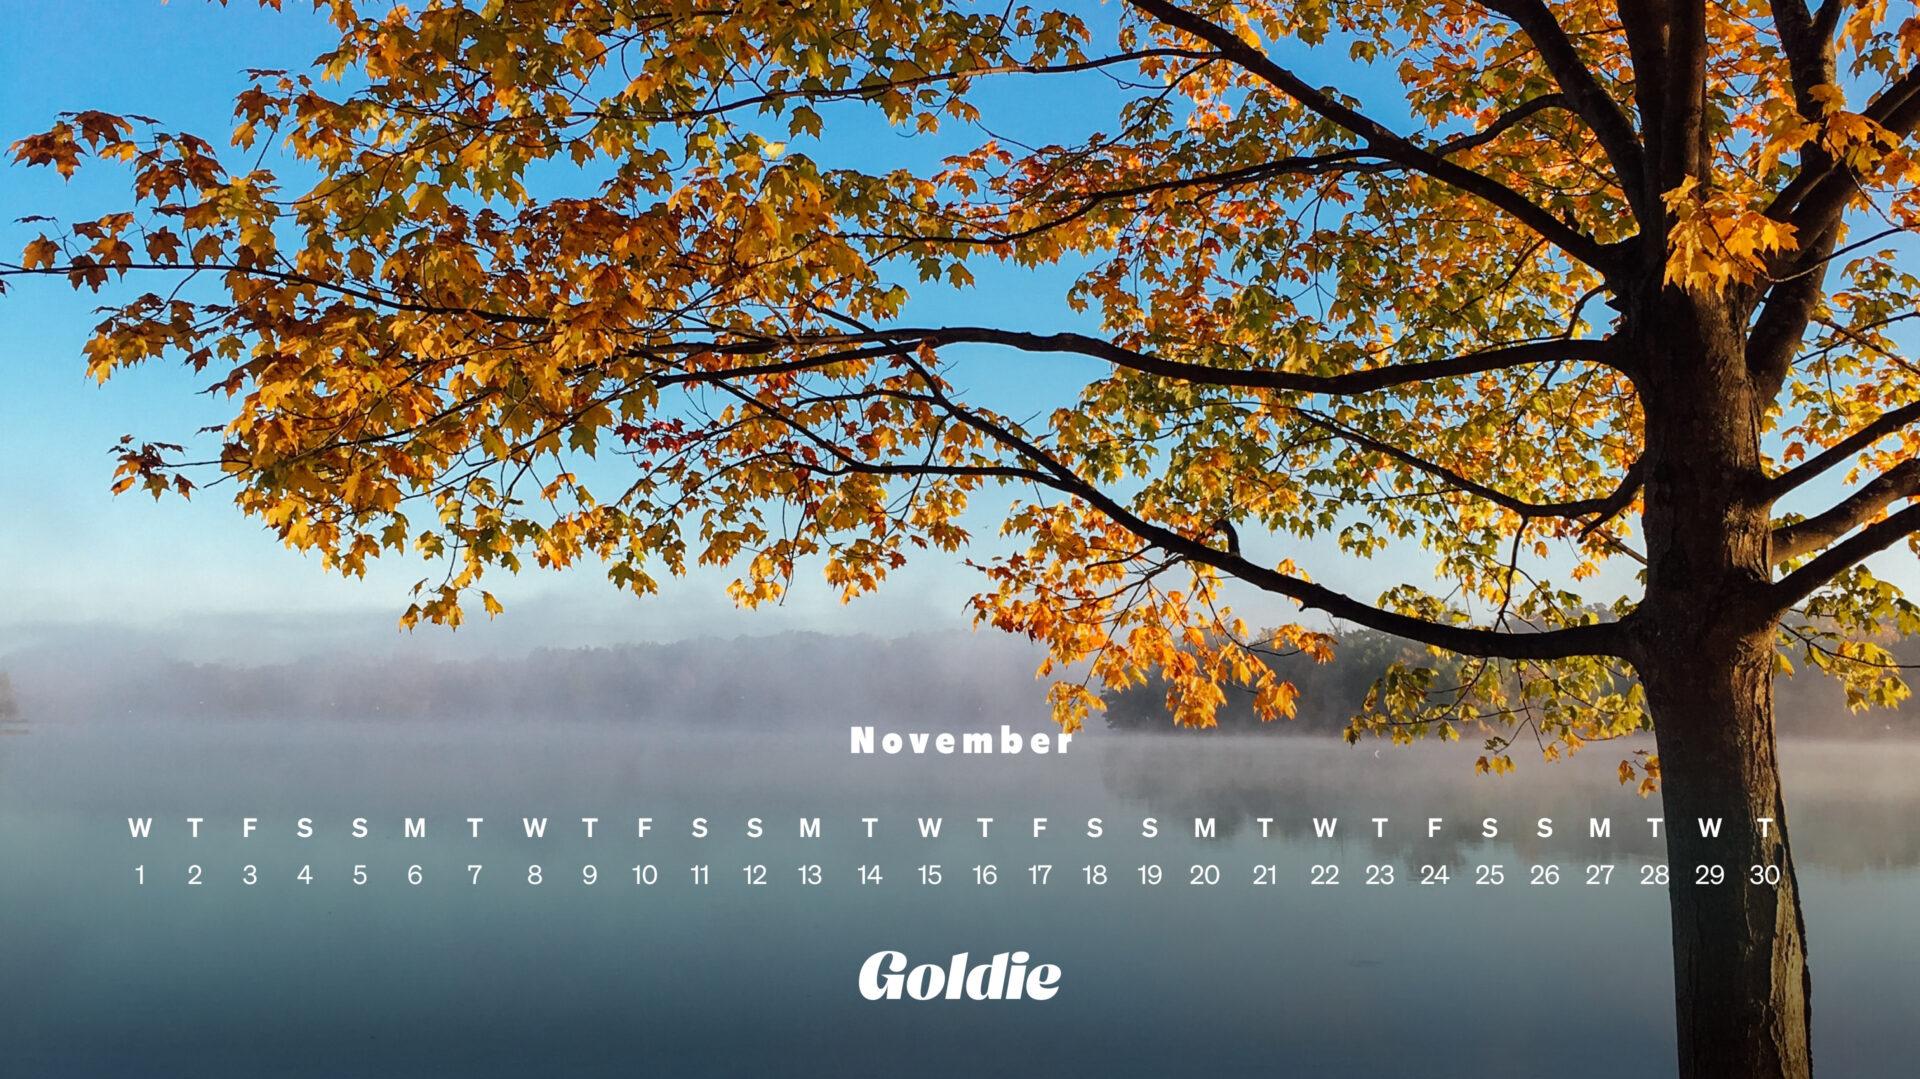 🔥 Download November Wallpaper Calendars Desktop Mobile by nwalsh